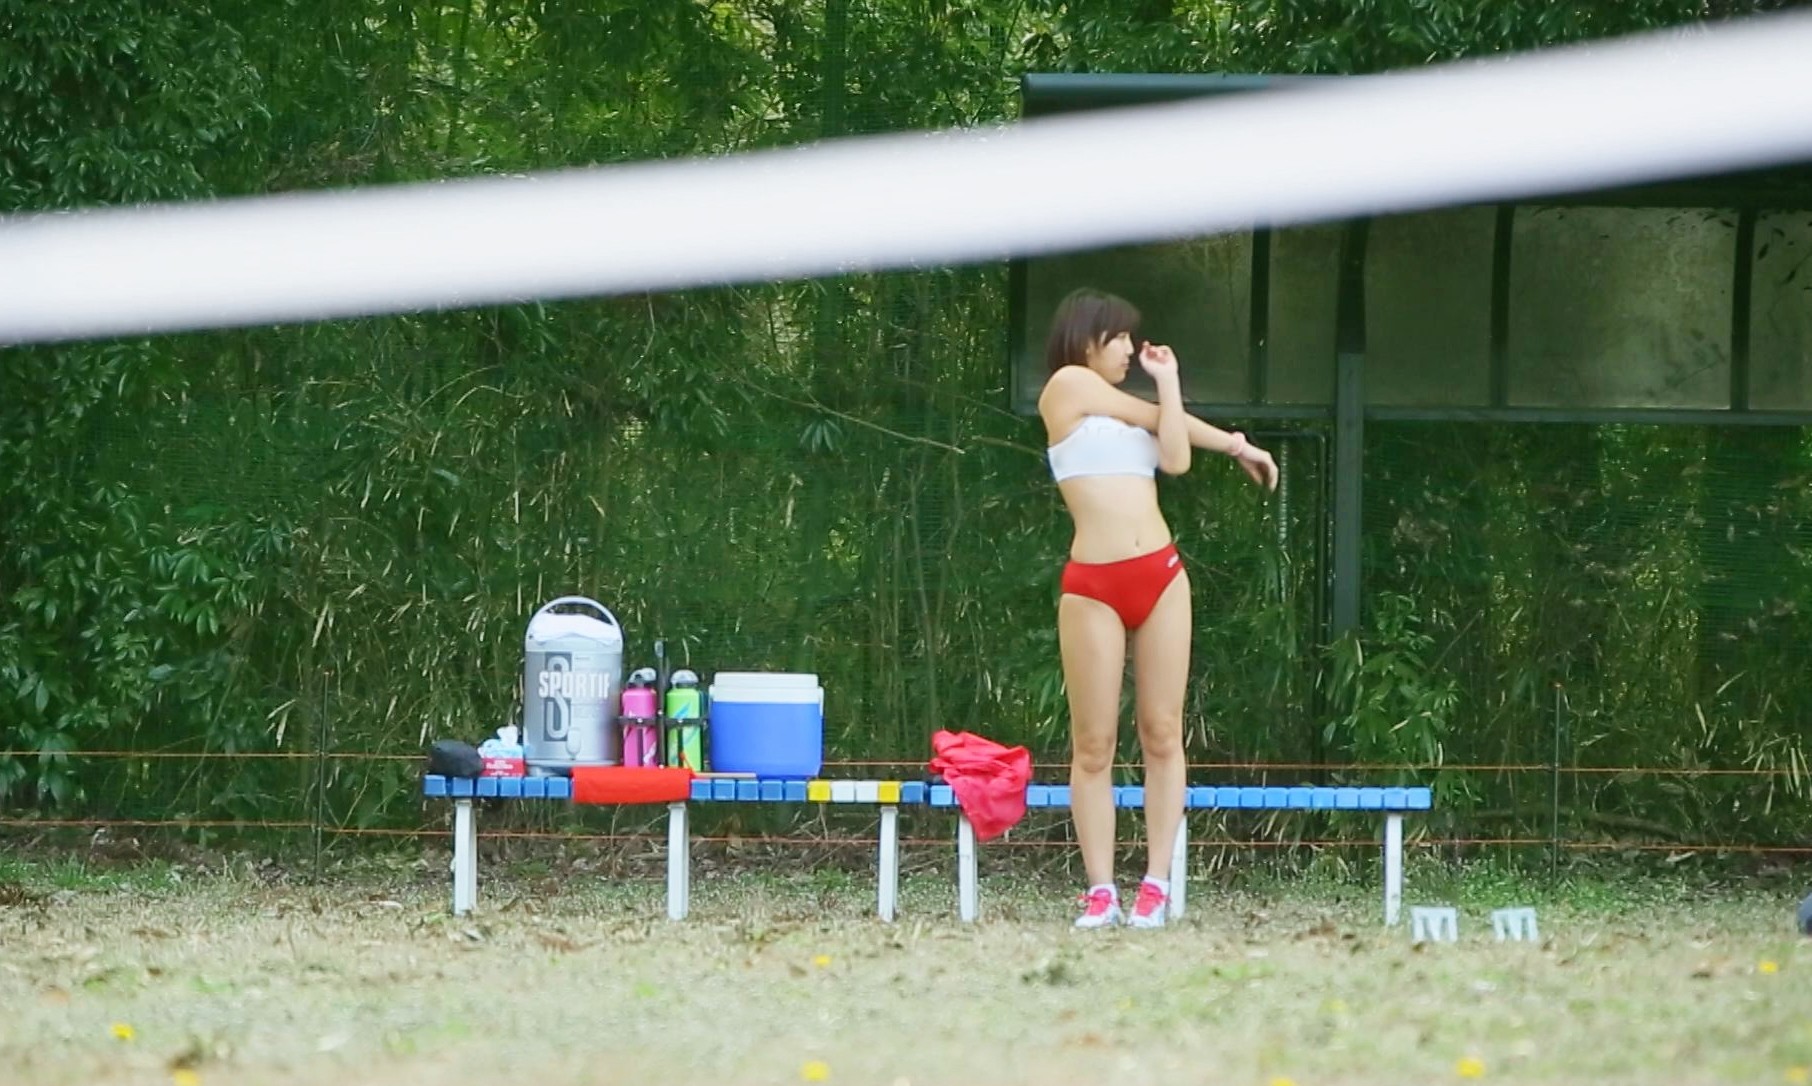 某体育大学3年陸上部女子800m走選手 佐東愛美 AVデビュー AV女優新世代を発掘します 画像4